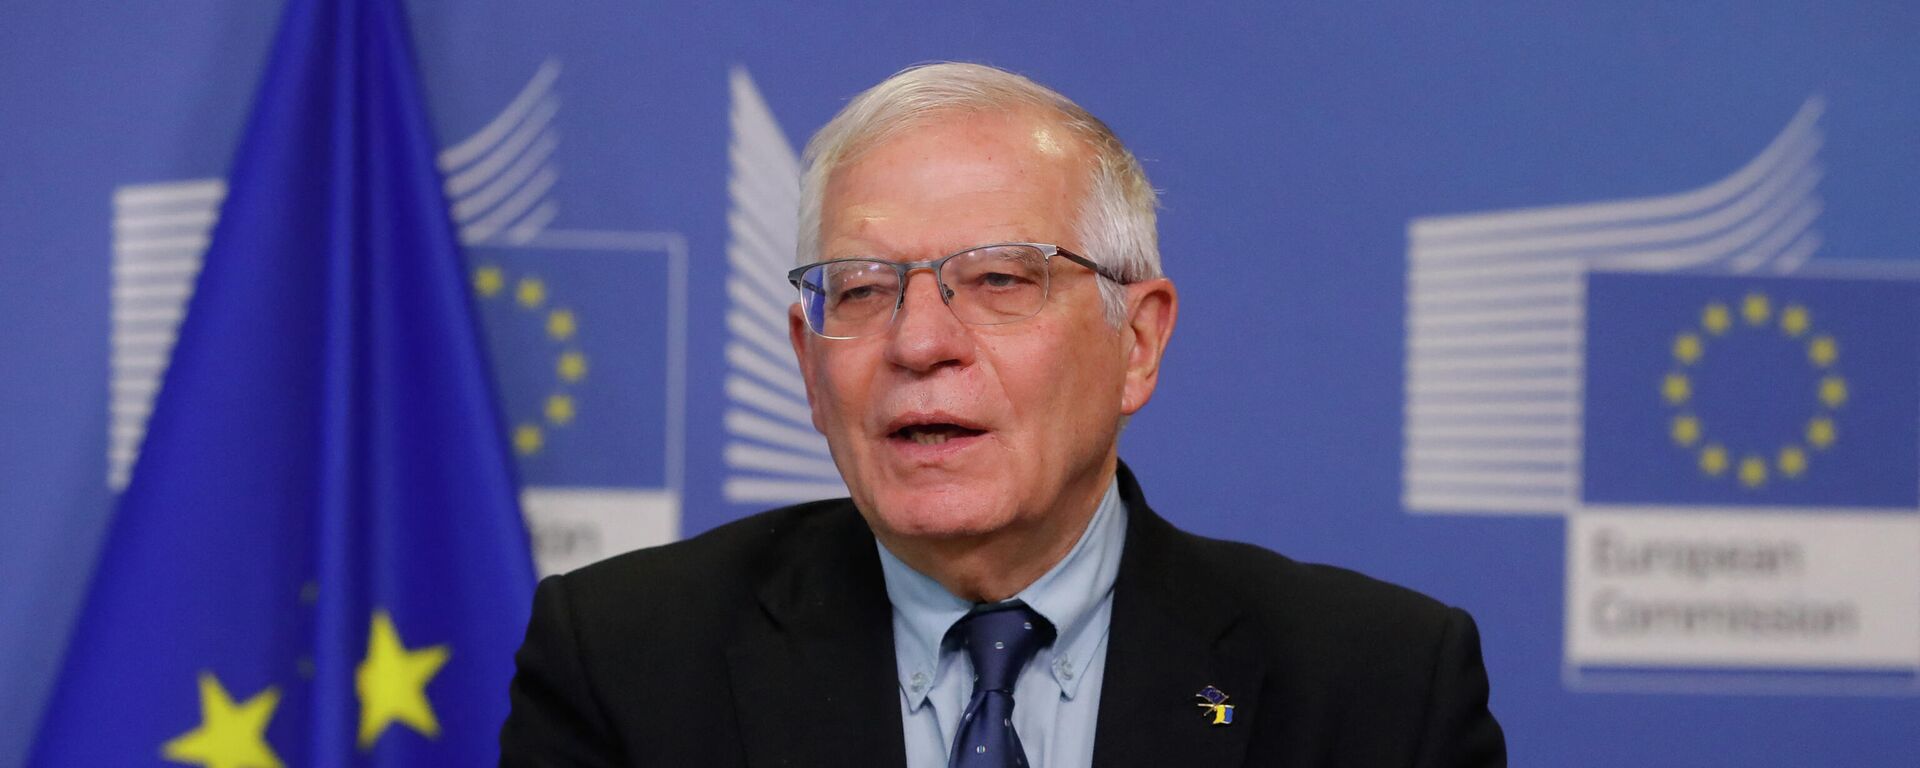 O chefe de política externa da União Europeia, Josep Borrell, faz declaração sobre medidas contra a Rússia, em Bruxelas, em 27 de fevereiro de 2022. - Sputnik Brasil, 1920, 28.02.2022